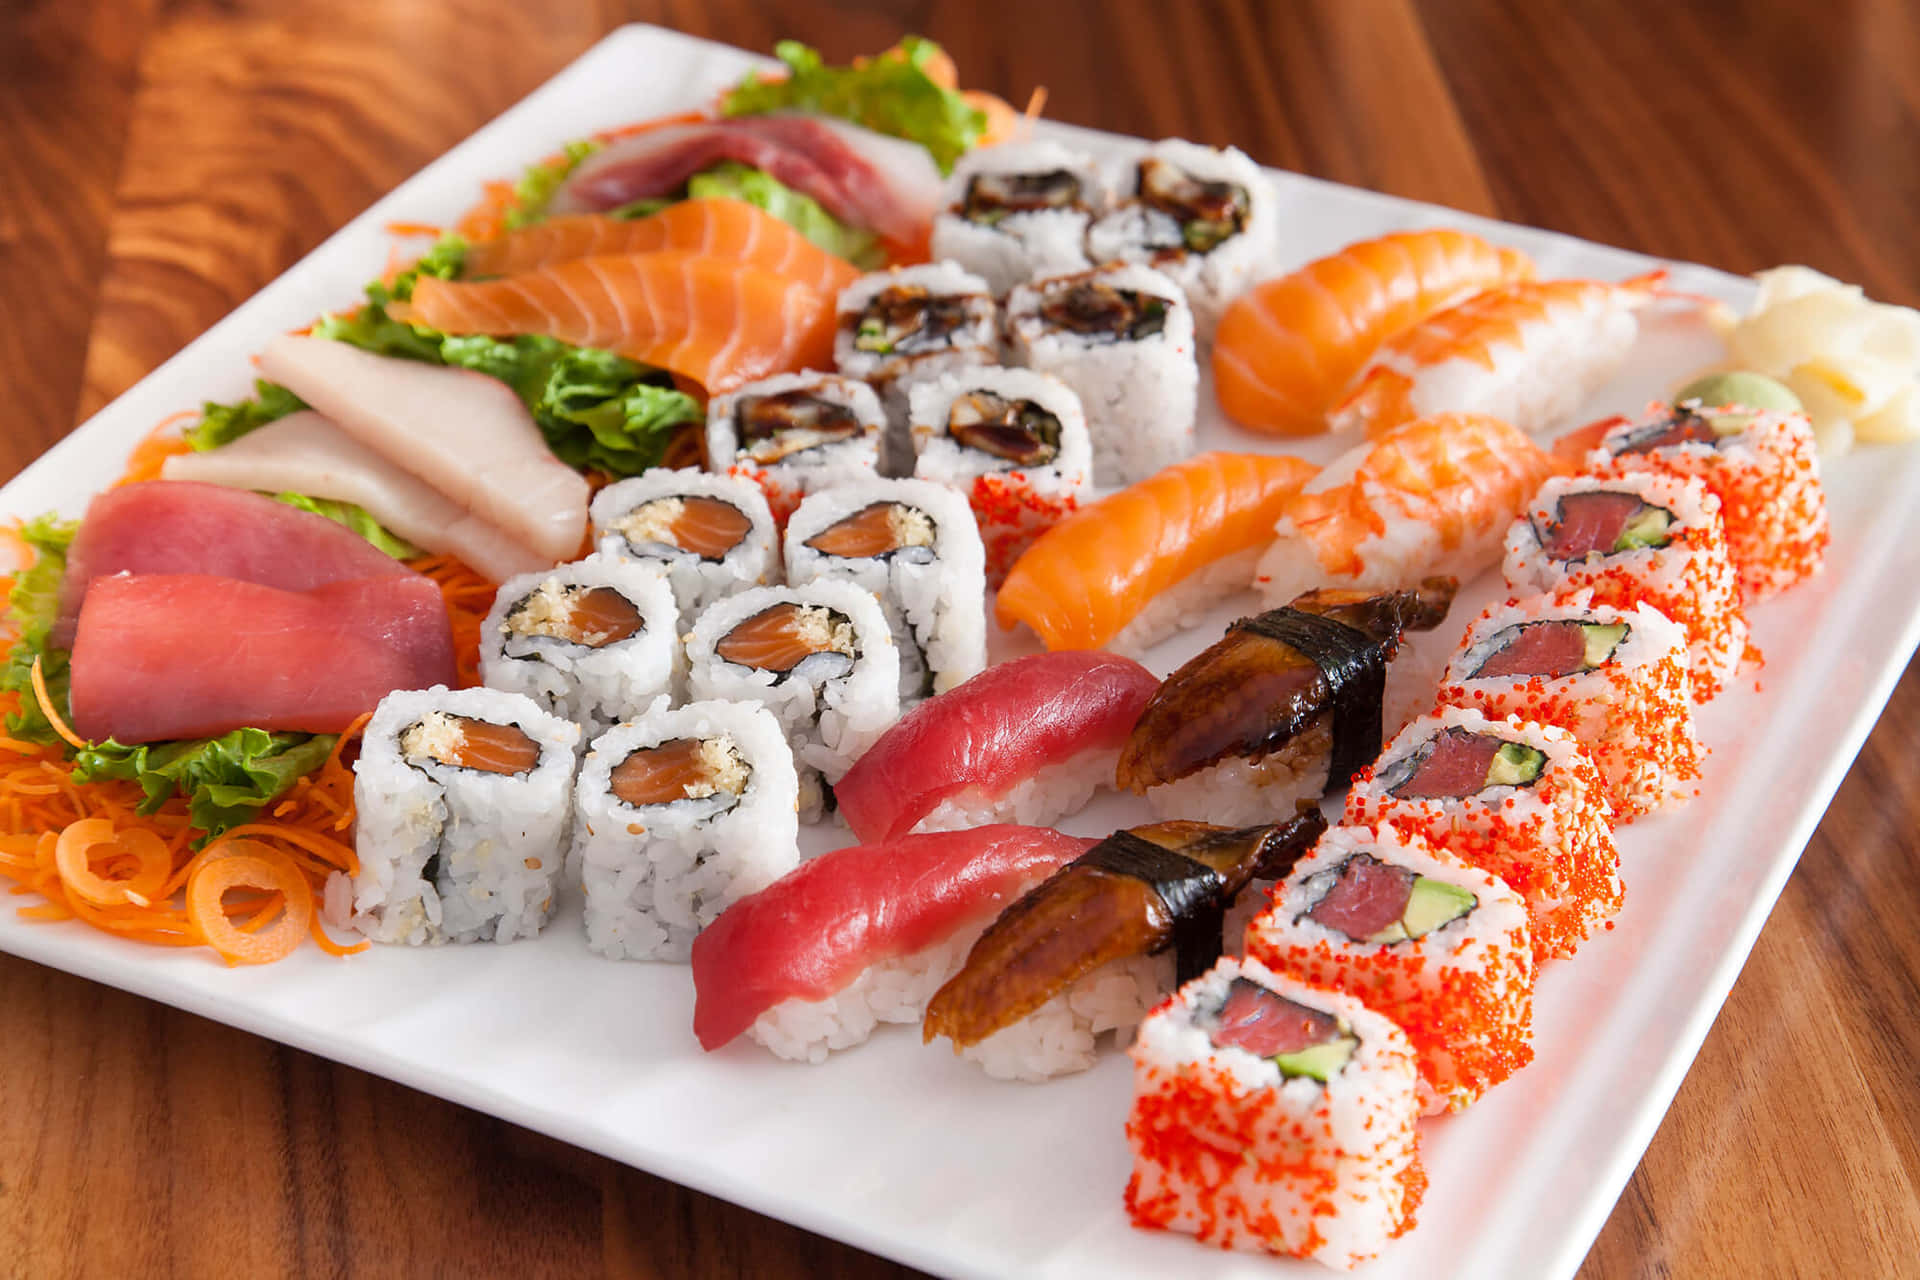 Unassortimento Di Sushi E Maki Rolls, Rotoli Di Sushi E Delizie Giapponesi.